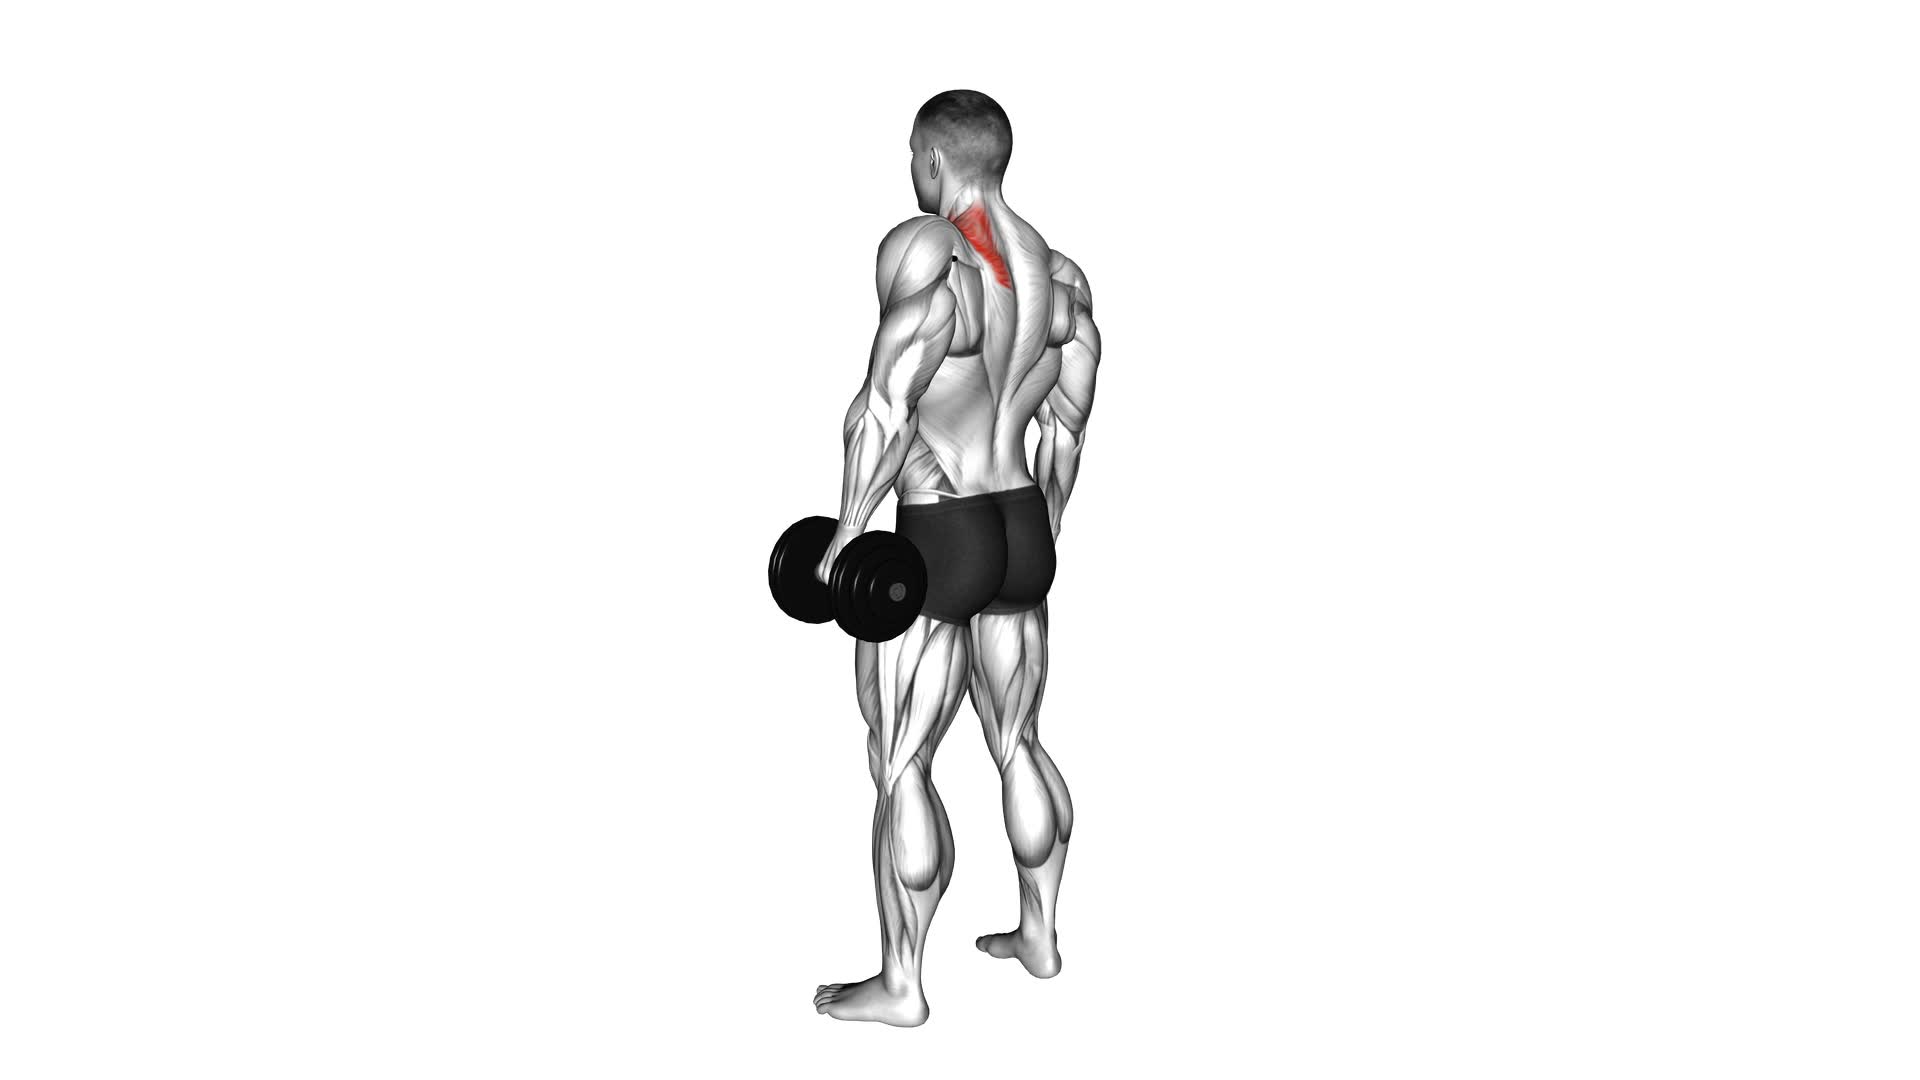 Dumbbell Single Arm Shrug - Video Exercise Guide & Tips